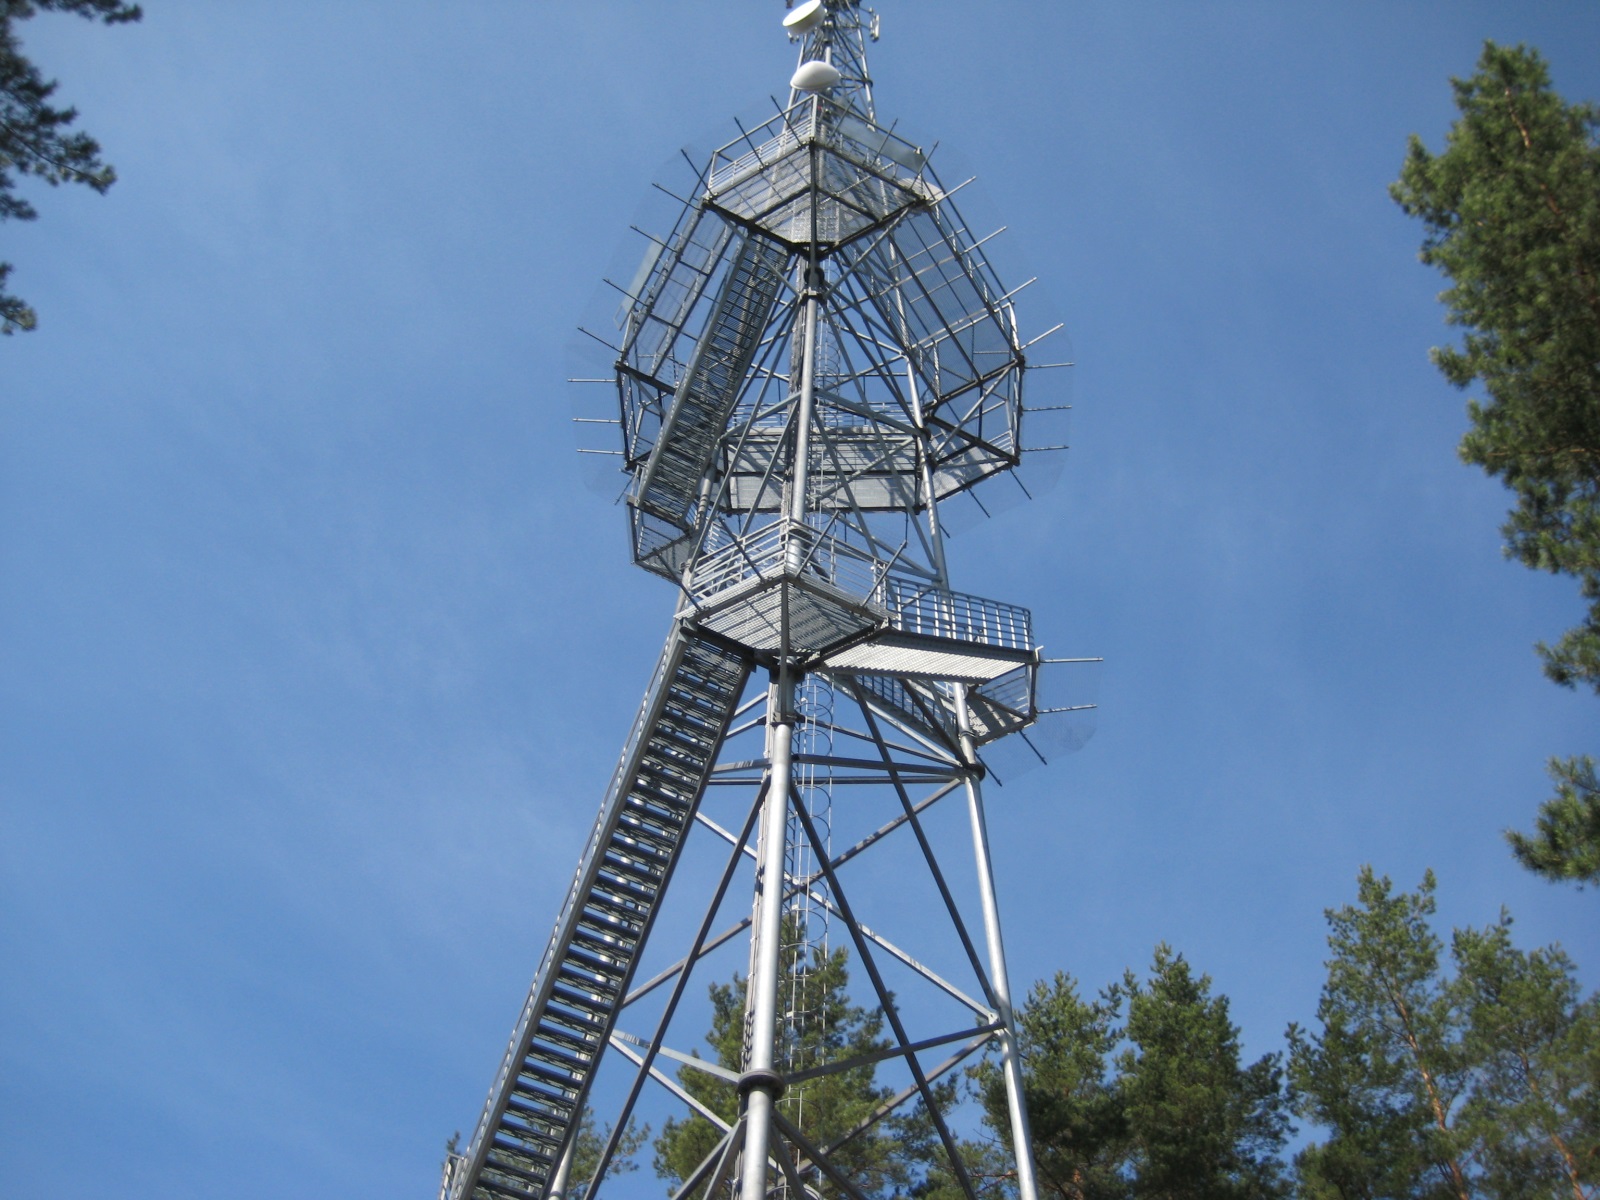 Šiliniškių (Ginučių) apžvalgos bokštas :: Apžvalgos bokštai Aukštaitijoje | 2013 | Nuotraukos autorius: vietoves.lt